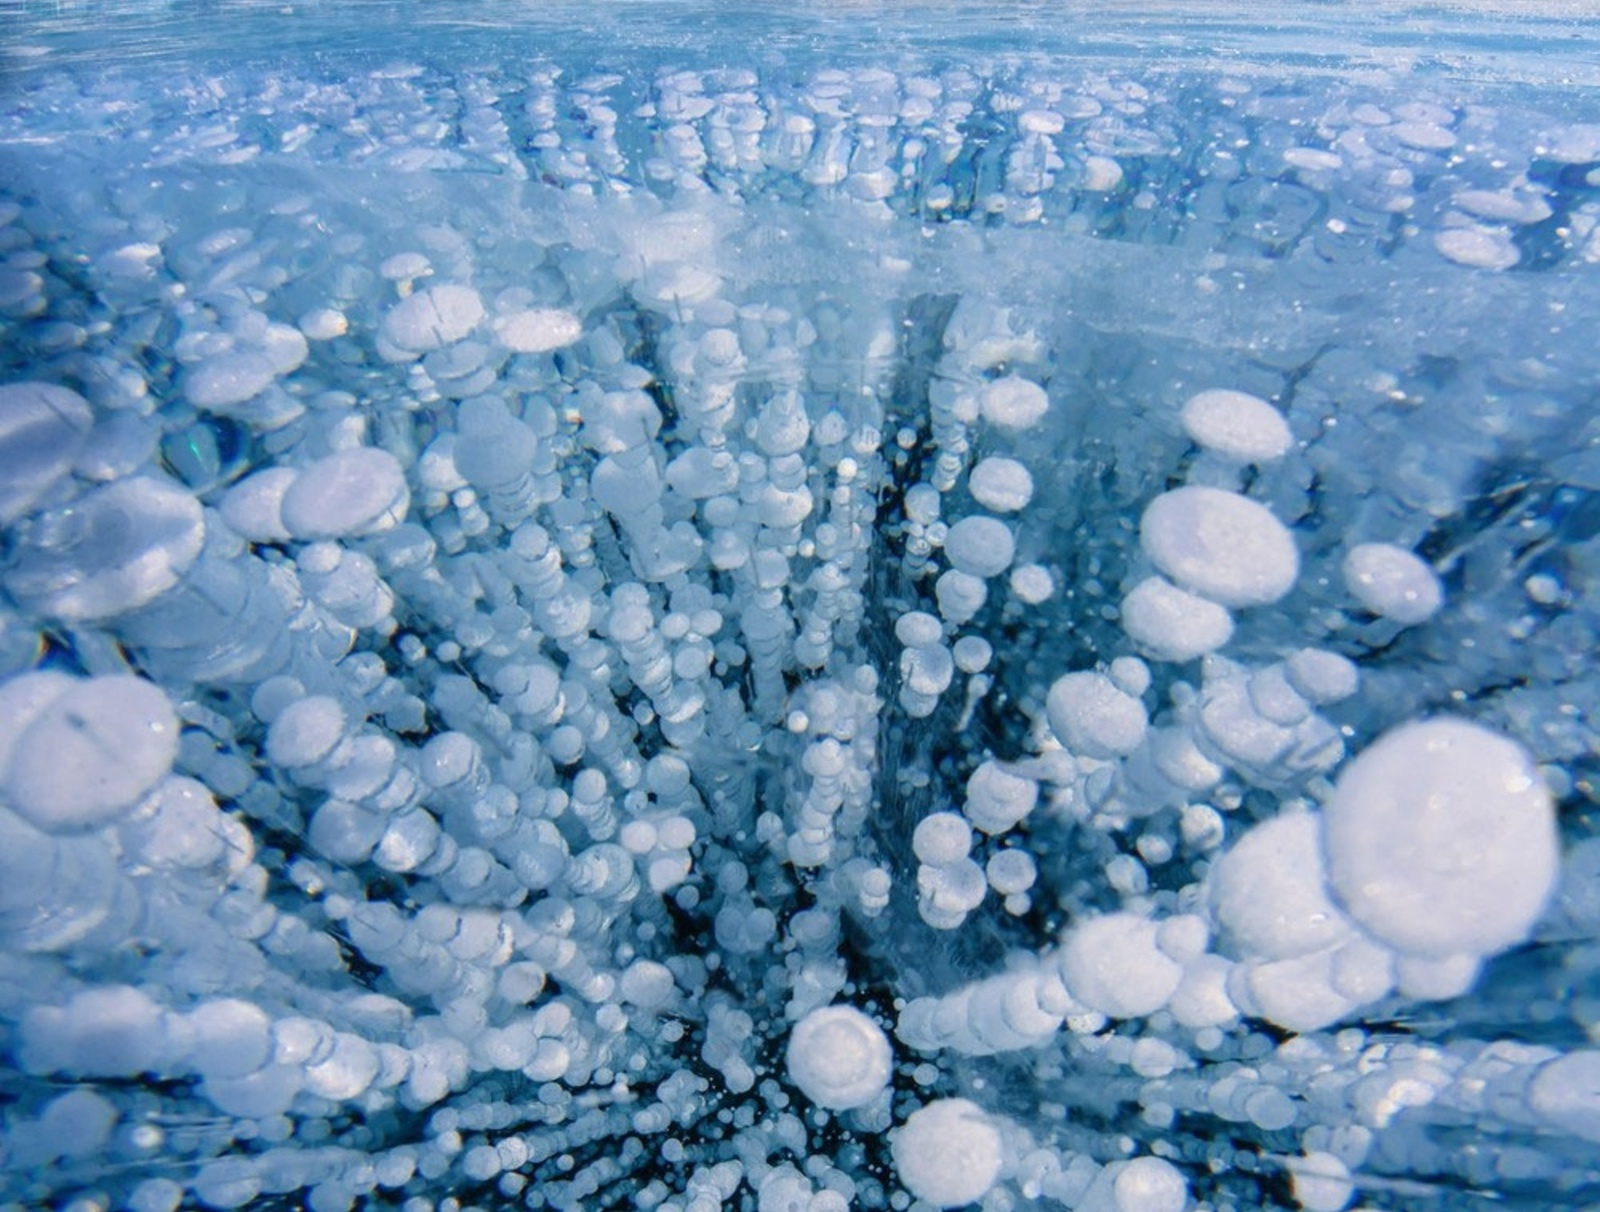  По версии NASA озеро Байкал попало в проект Astronomy Picture of the Day в категории «Фото дня"